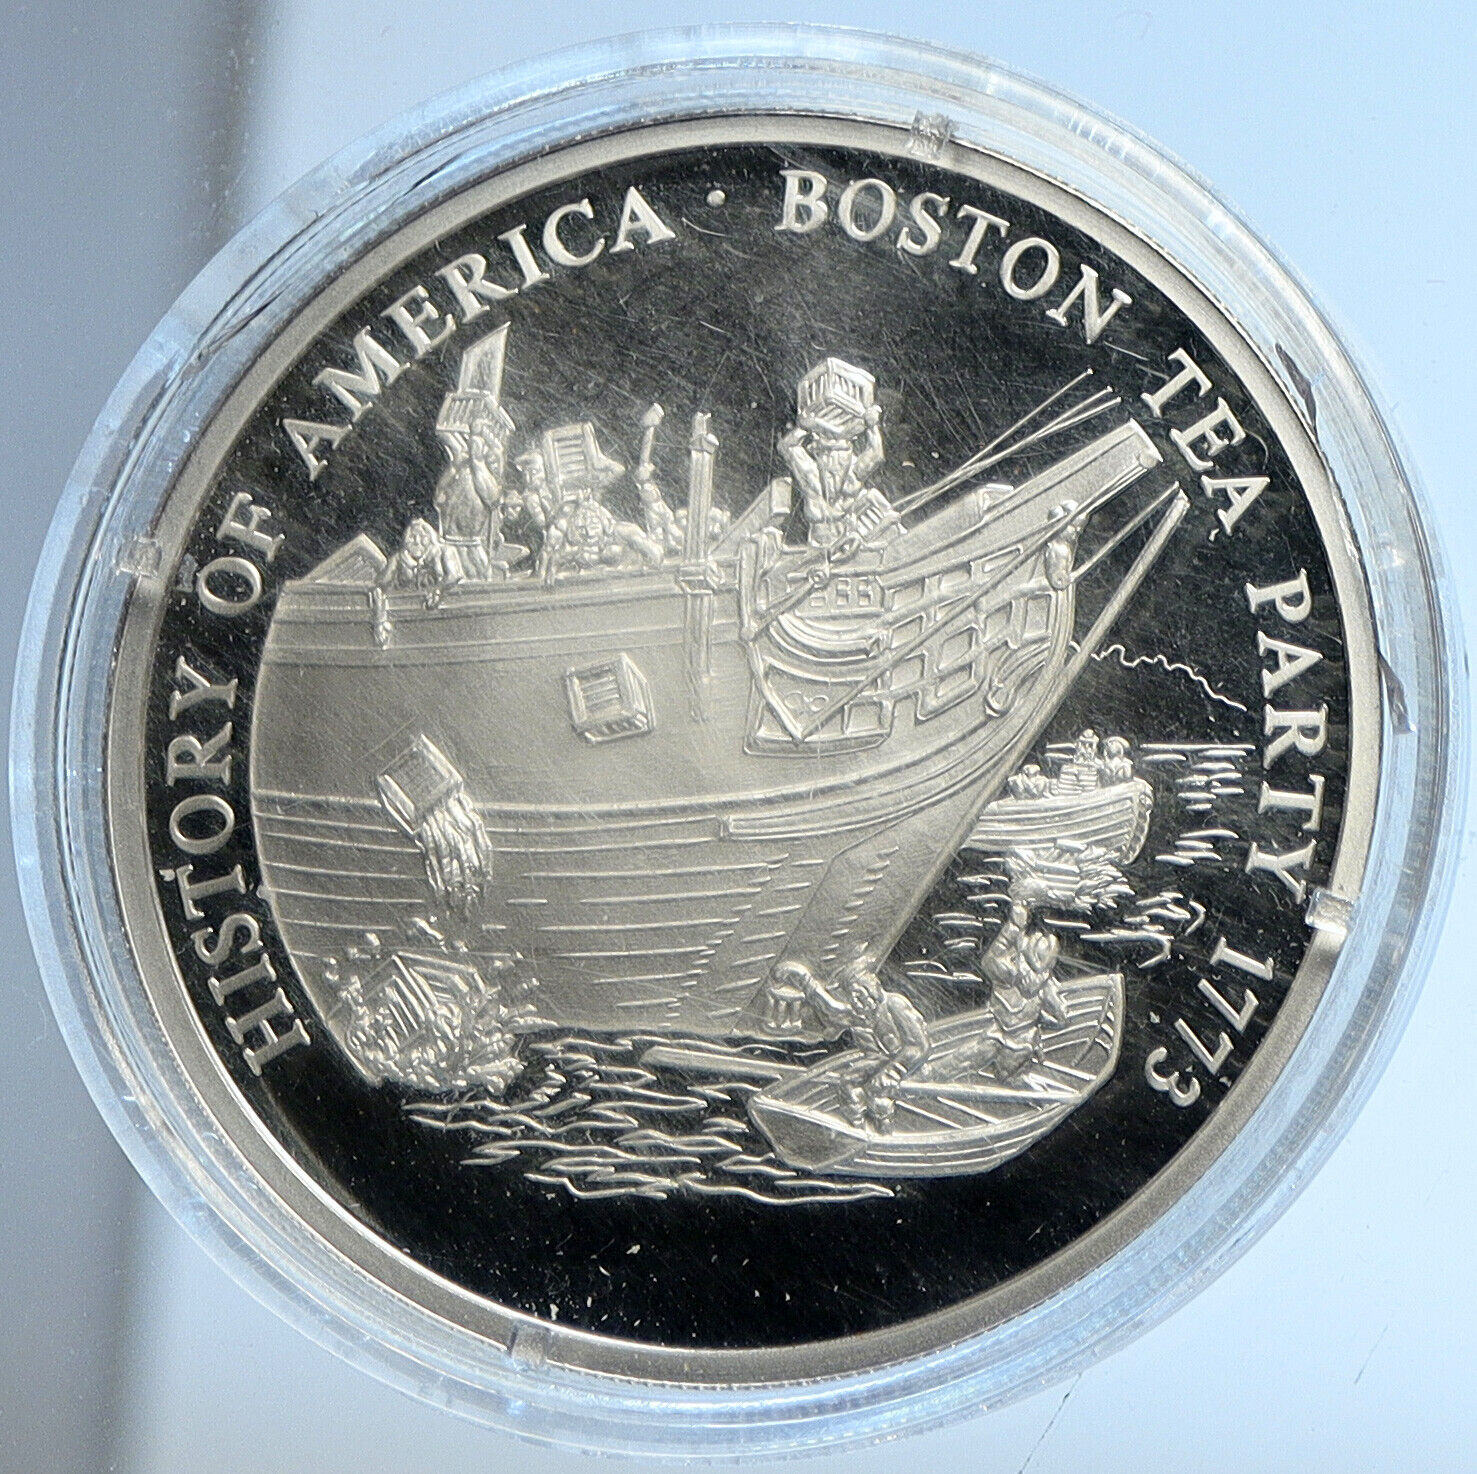 2000 LIBERIA American BOSTON TEA PARTY Tax Ship Proof Silver $20 Coin i113200